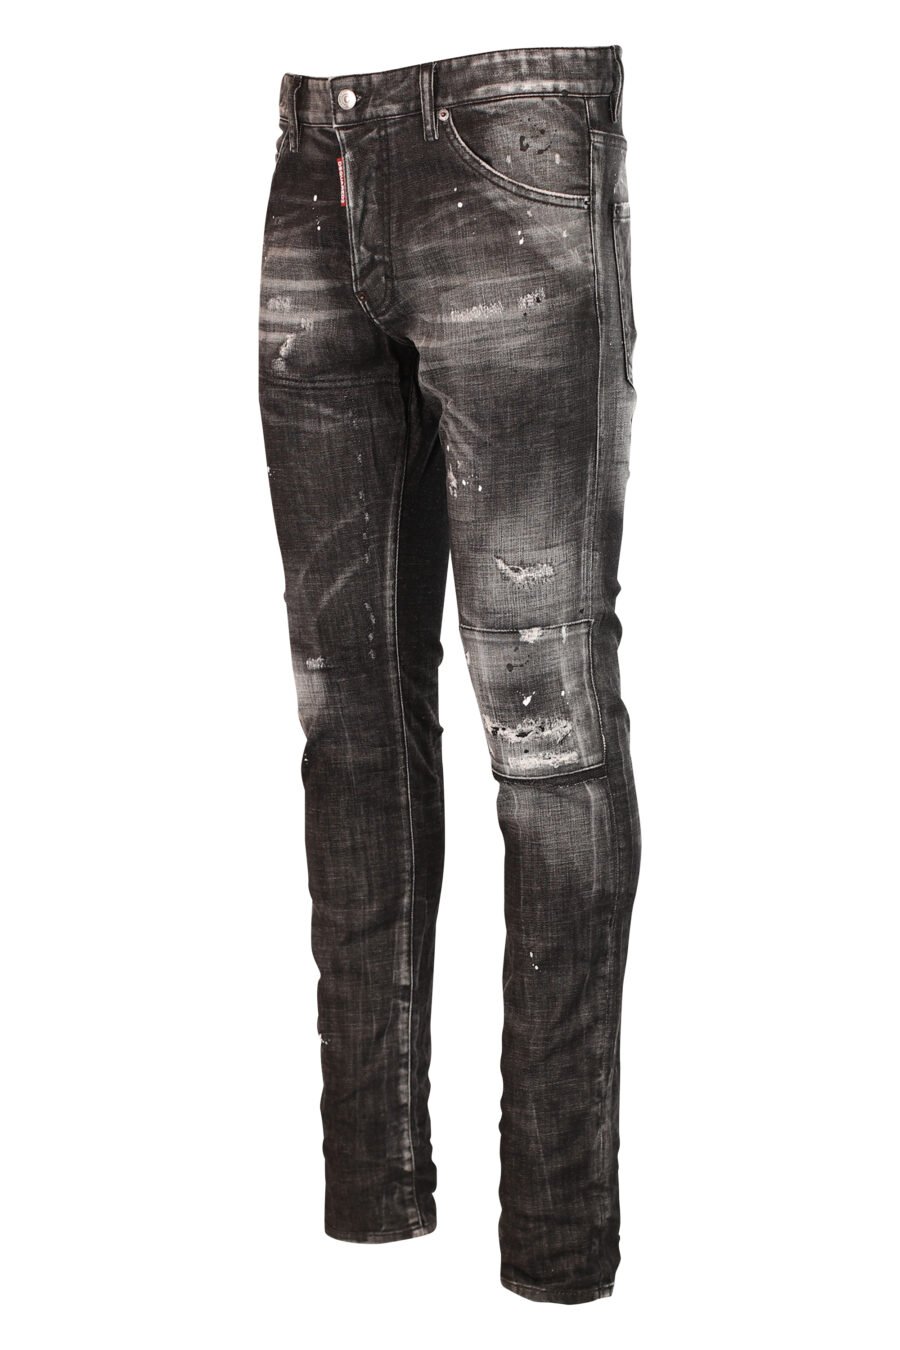 Pantalon en jean noir semi usé et déchiré - 8052134953105 2